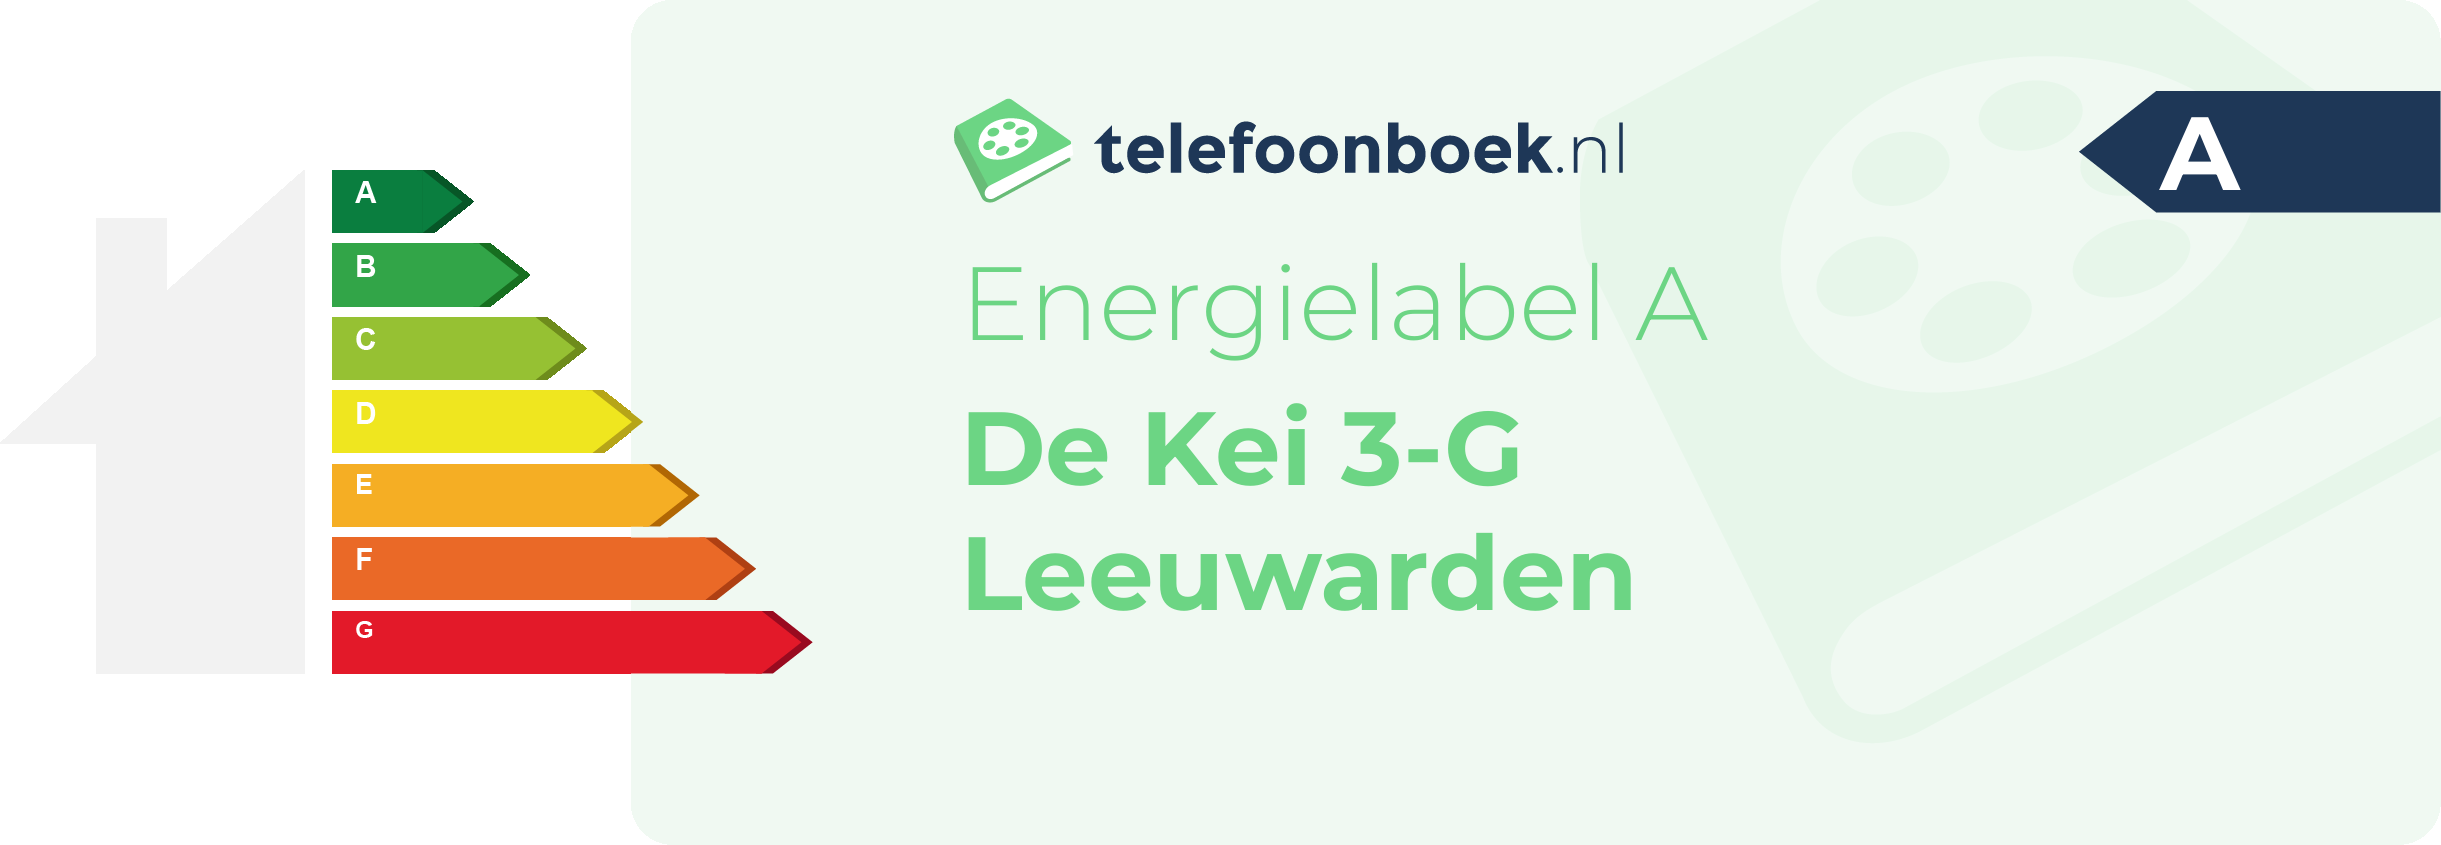 Energielabel De Kei 3-G Leeuwarden